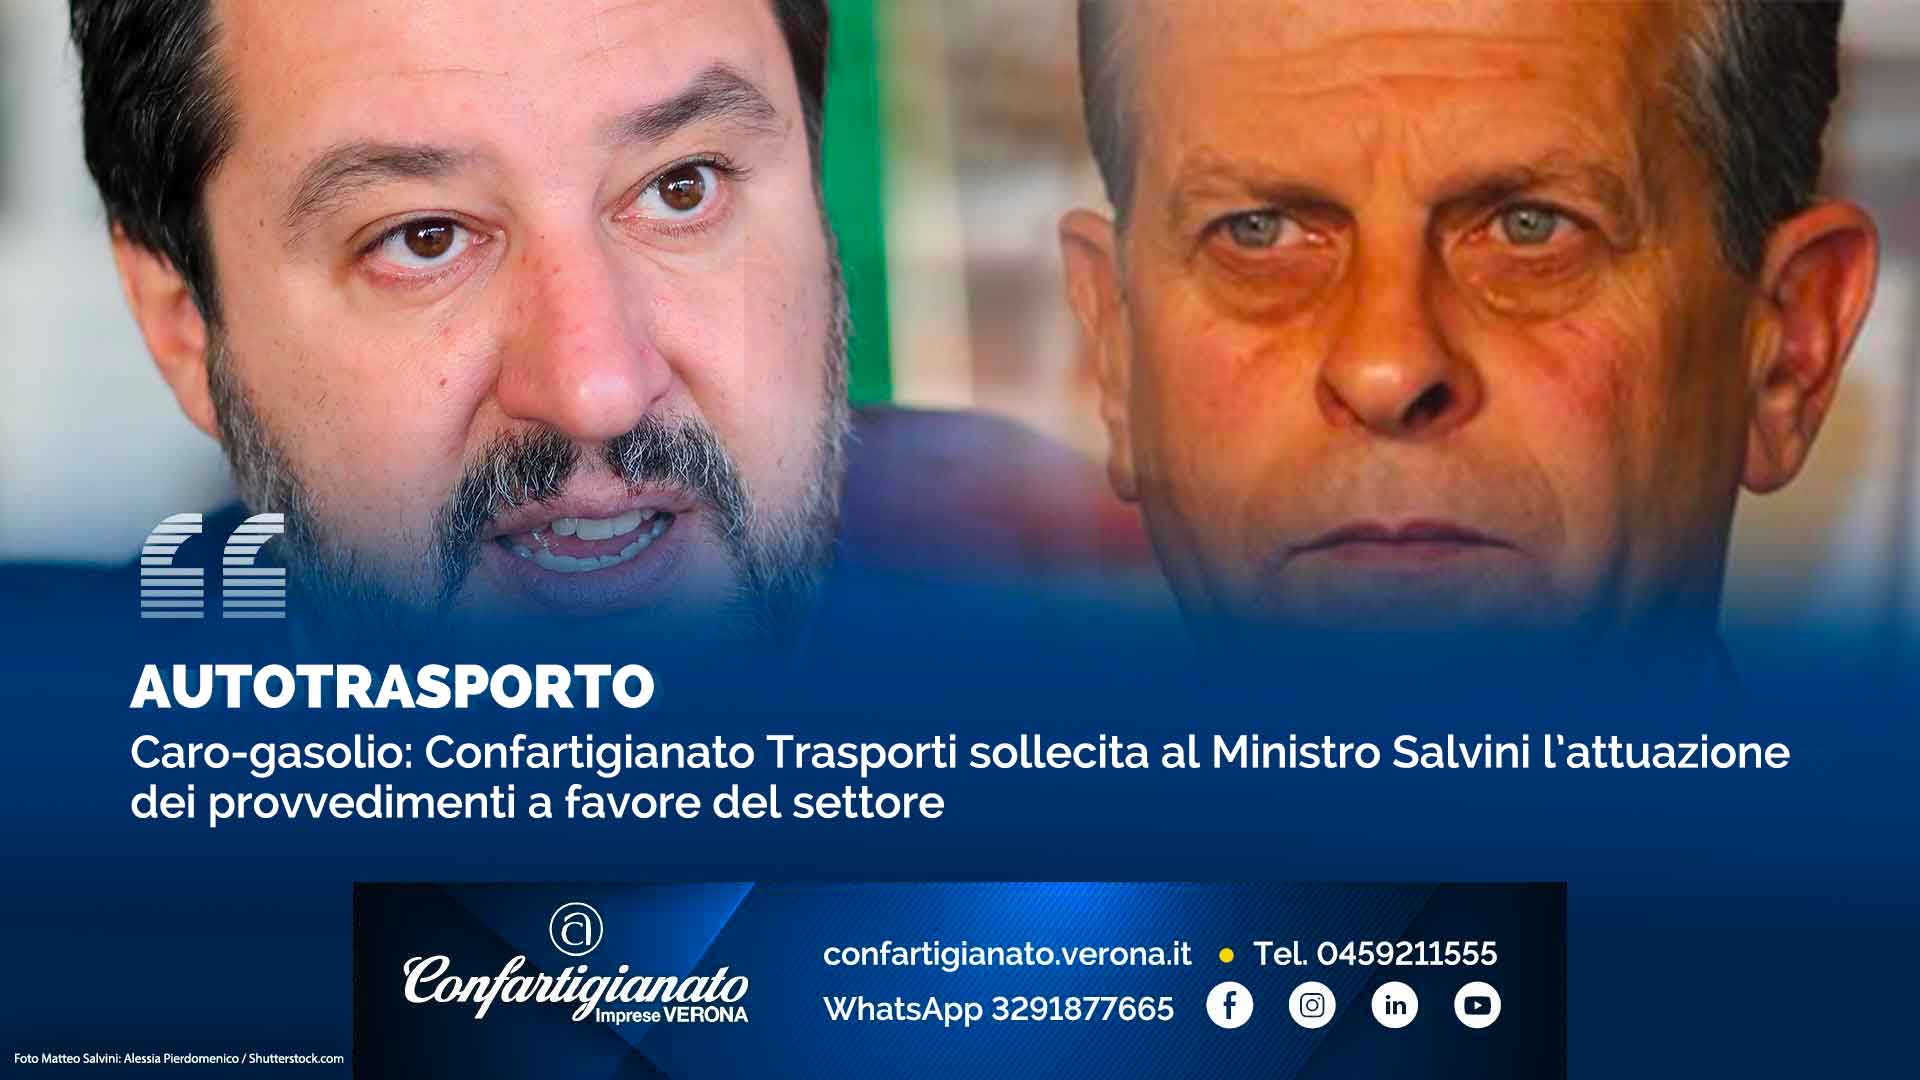 AUTOTRASPORTO – Caro-gasolio: Confartigianato Trasporti sollecita al Ministro Salvini l’attuazione dei provvedimenti a favore del settore